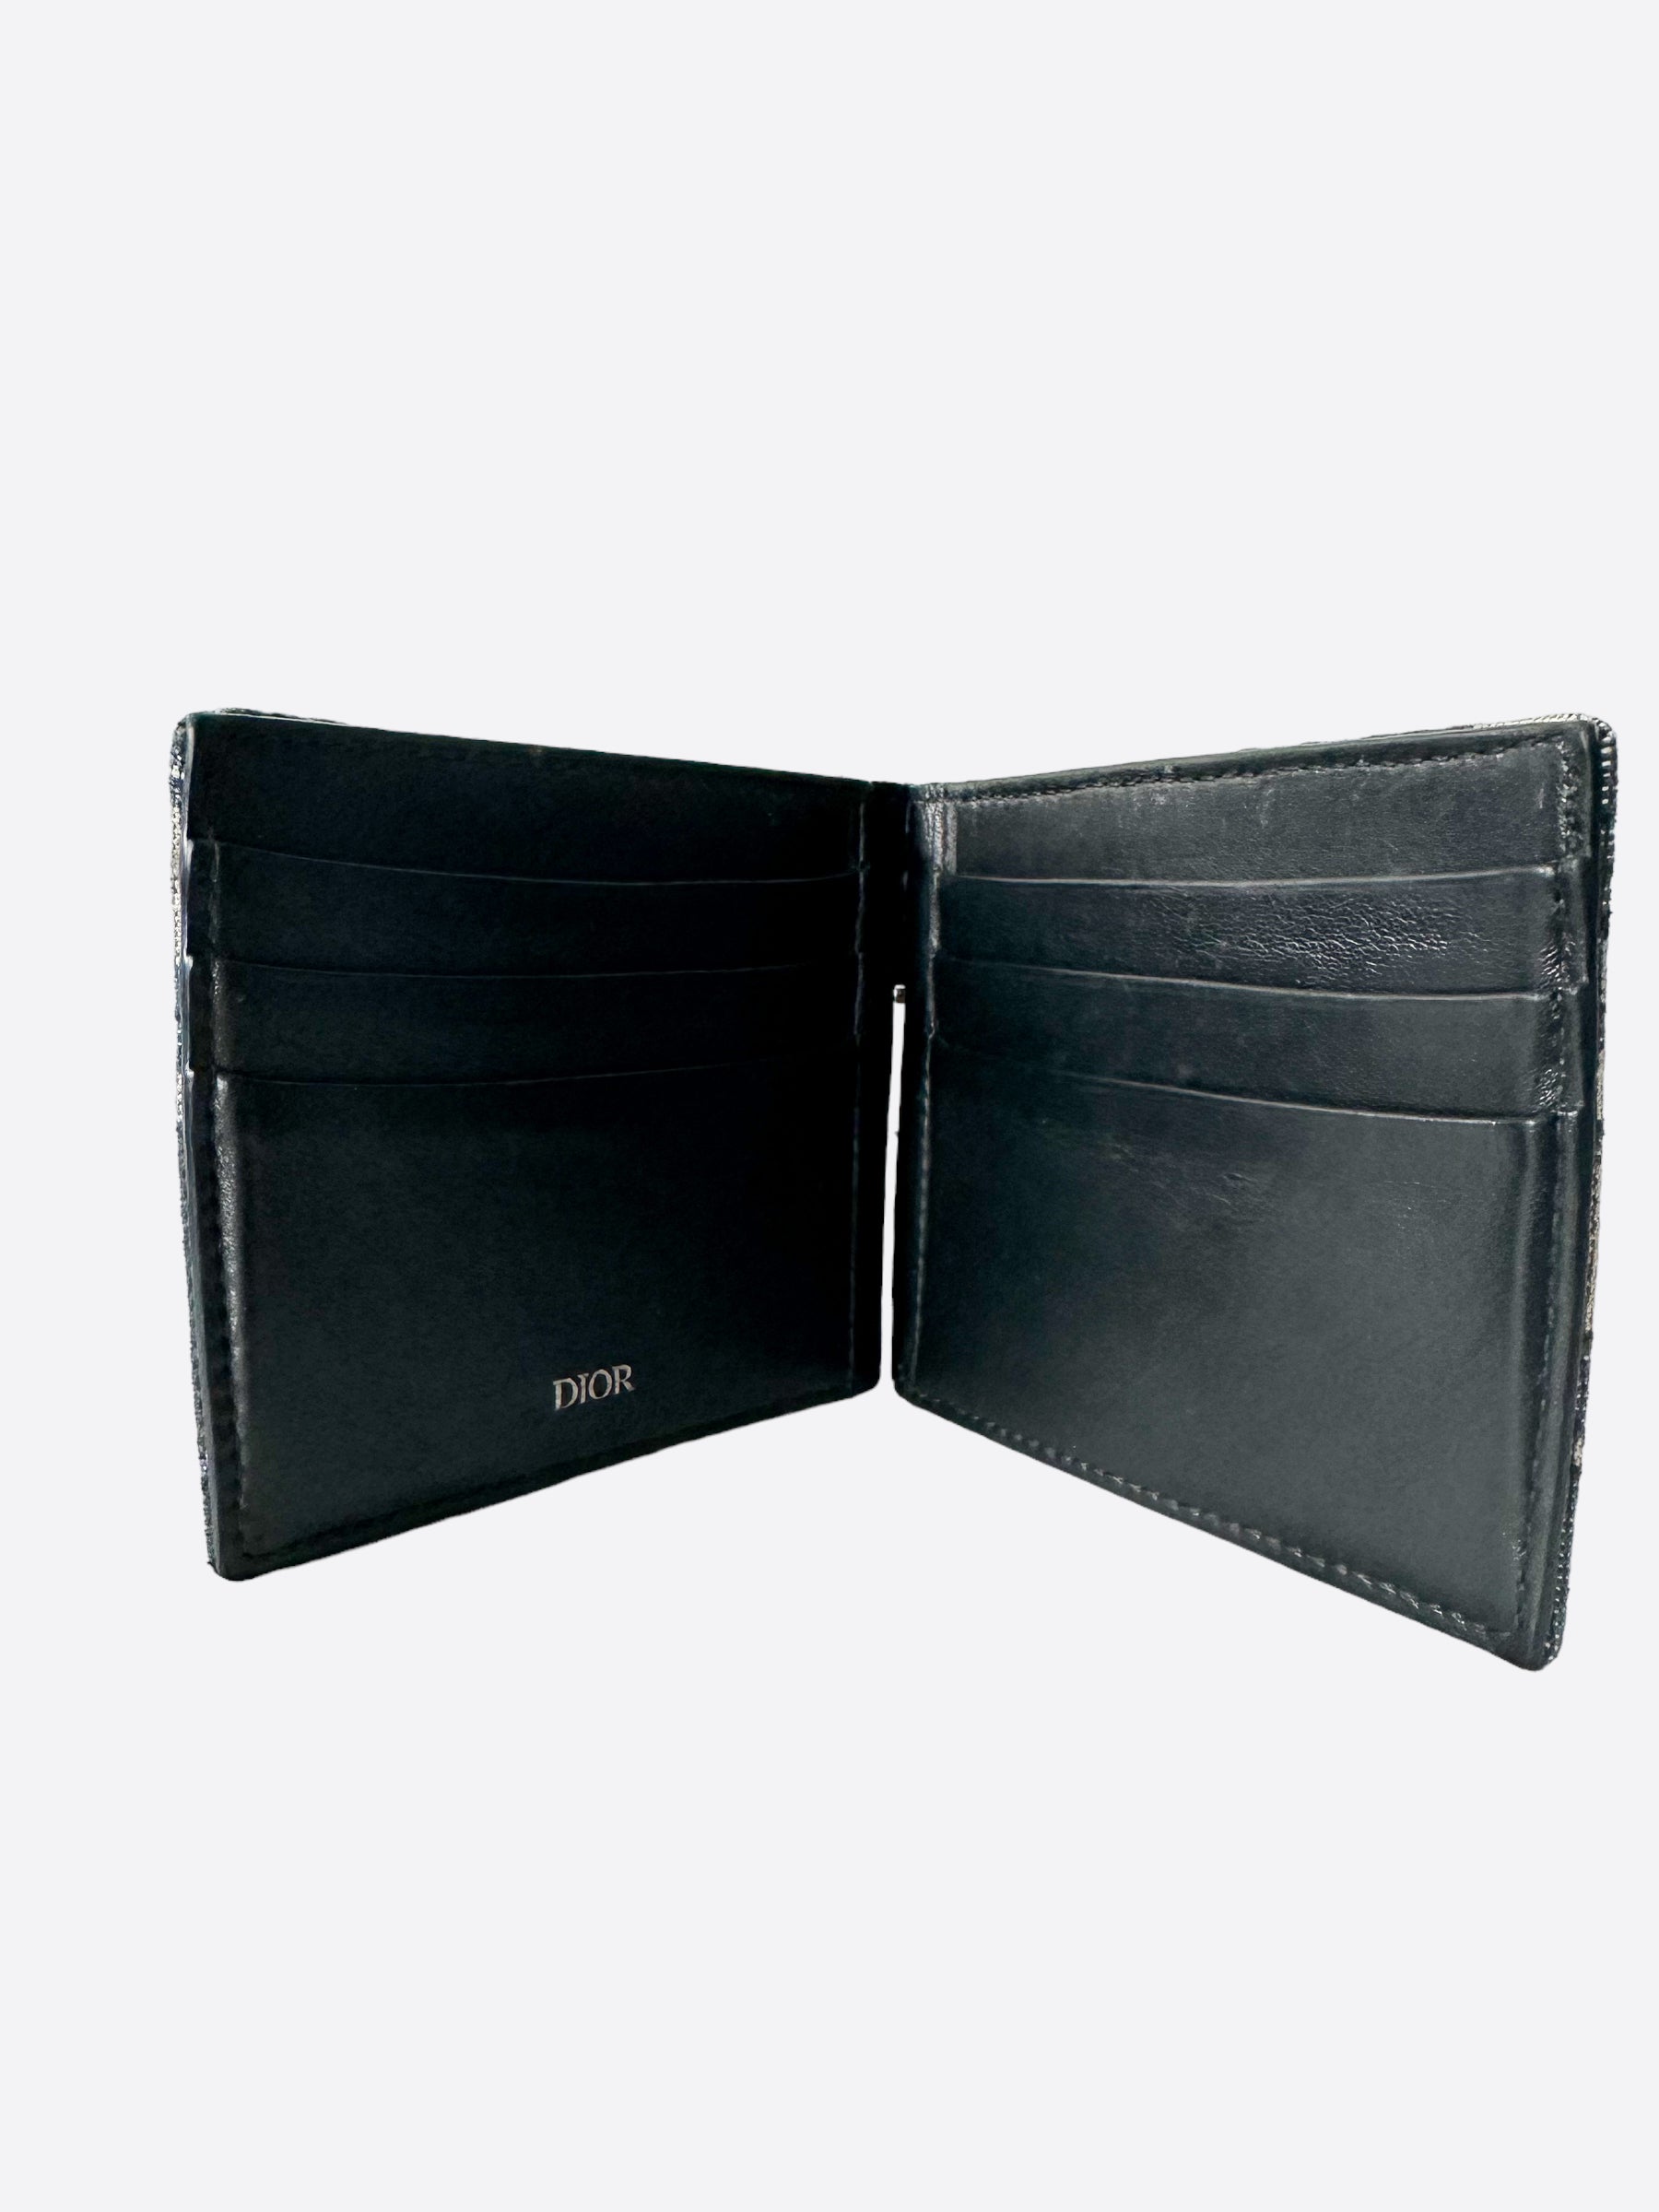 Dior Men's Wallet with Bill Clip